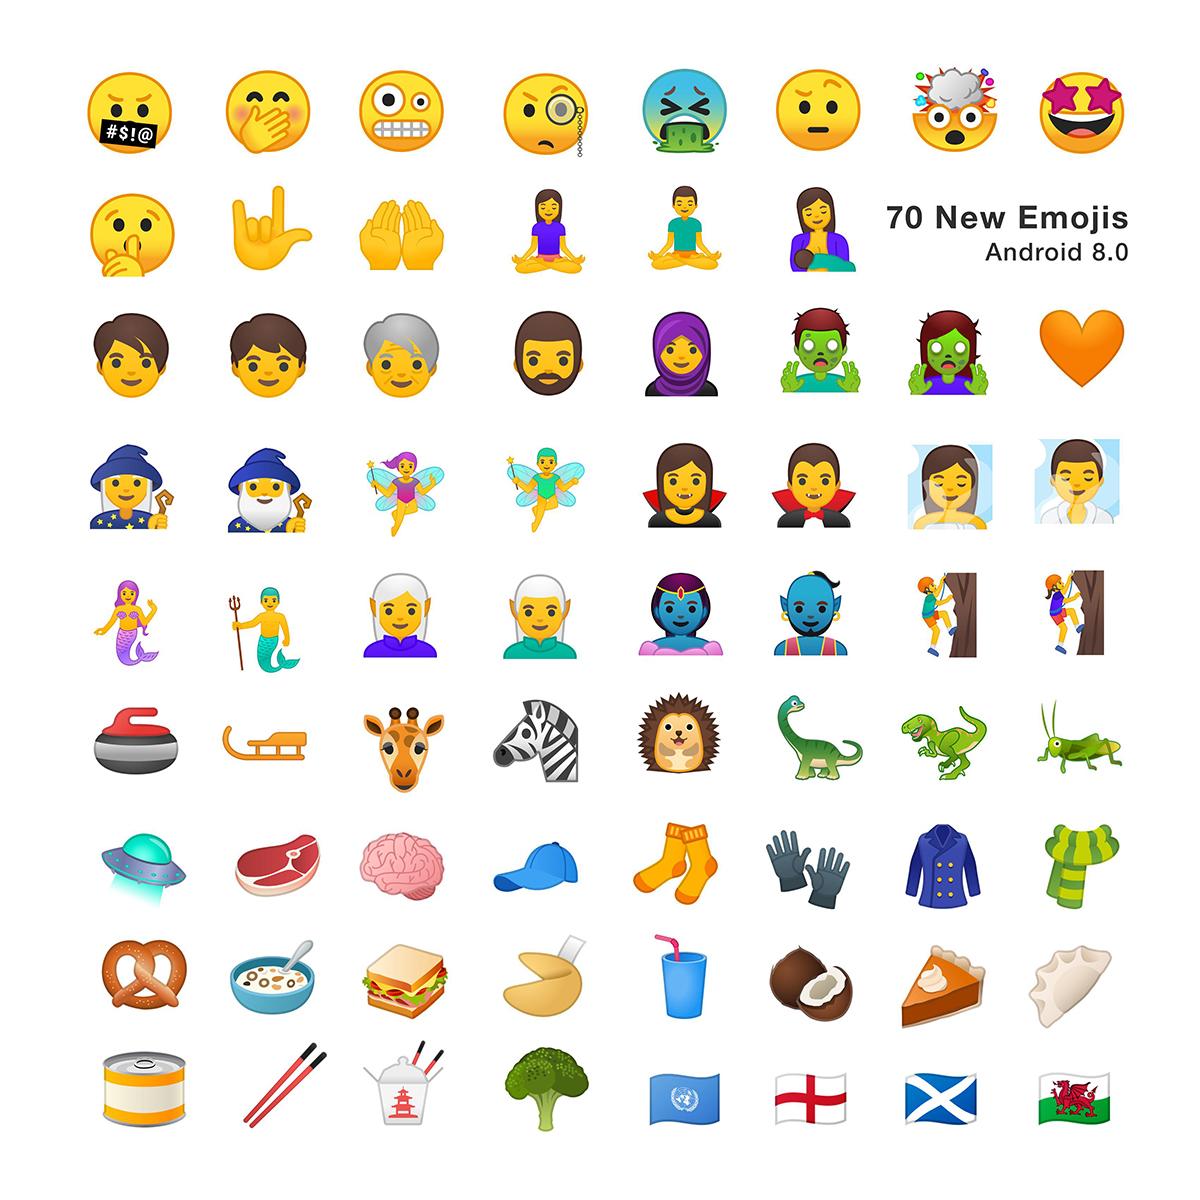 Emojis disponibles en Android Oreo